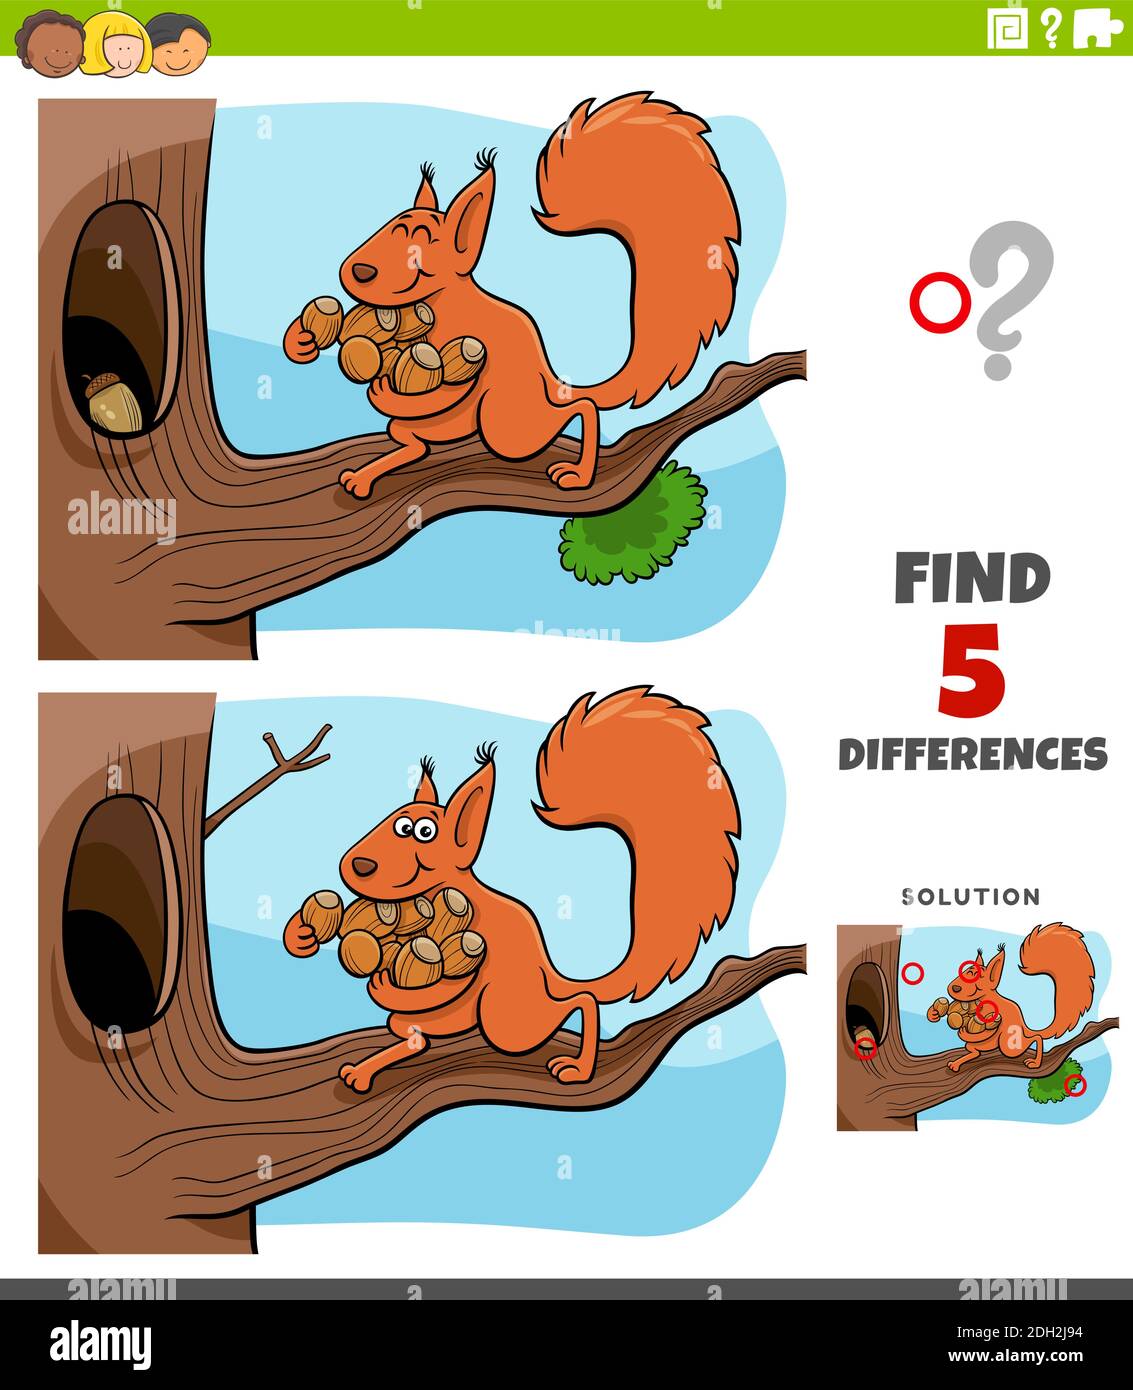 Ilustración de dibujos animados de encontrar las diferencias entre imágenes de juego educativo para niños con ardilla llevando bellotas a su hueco de árbol Ilustración del Vector